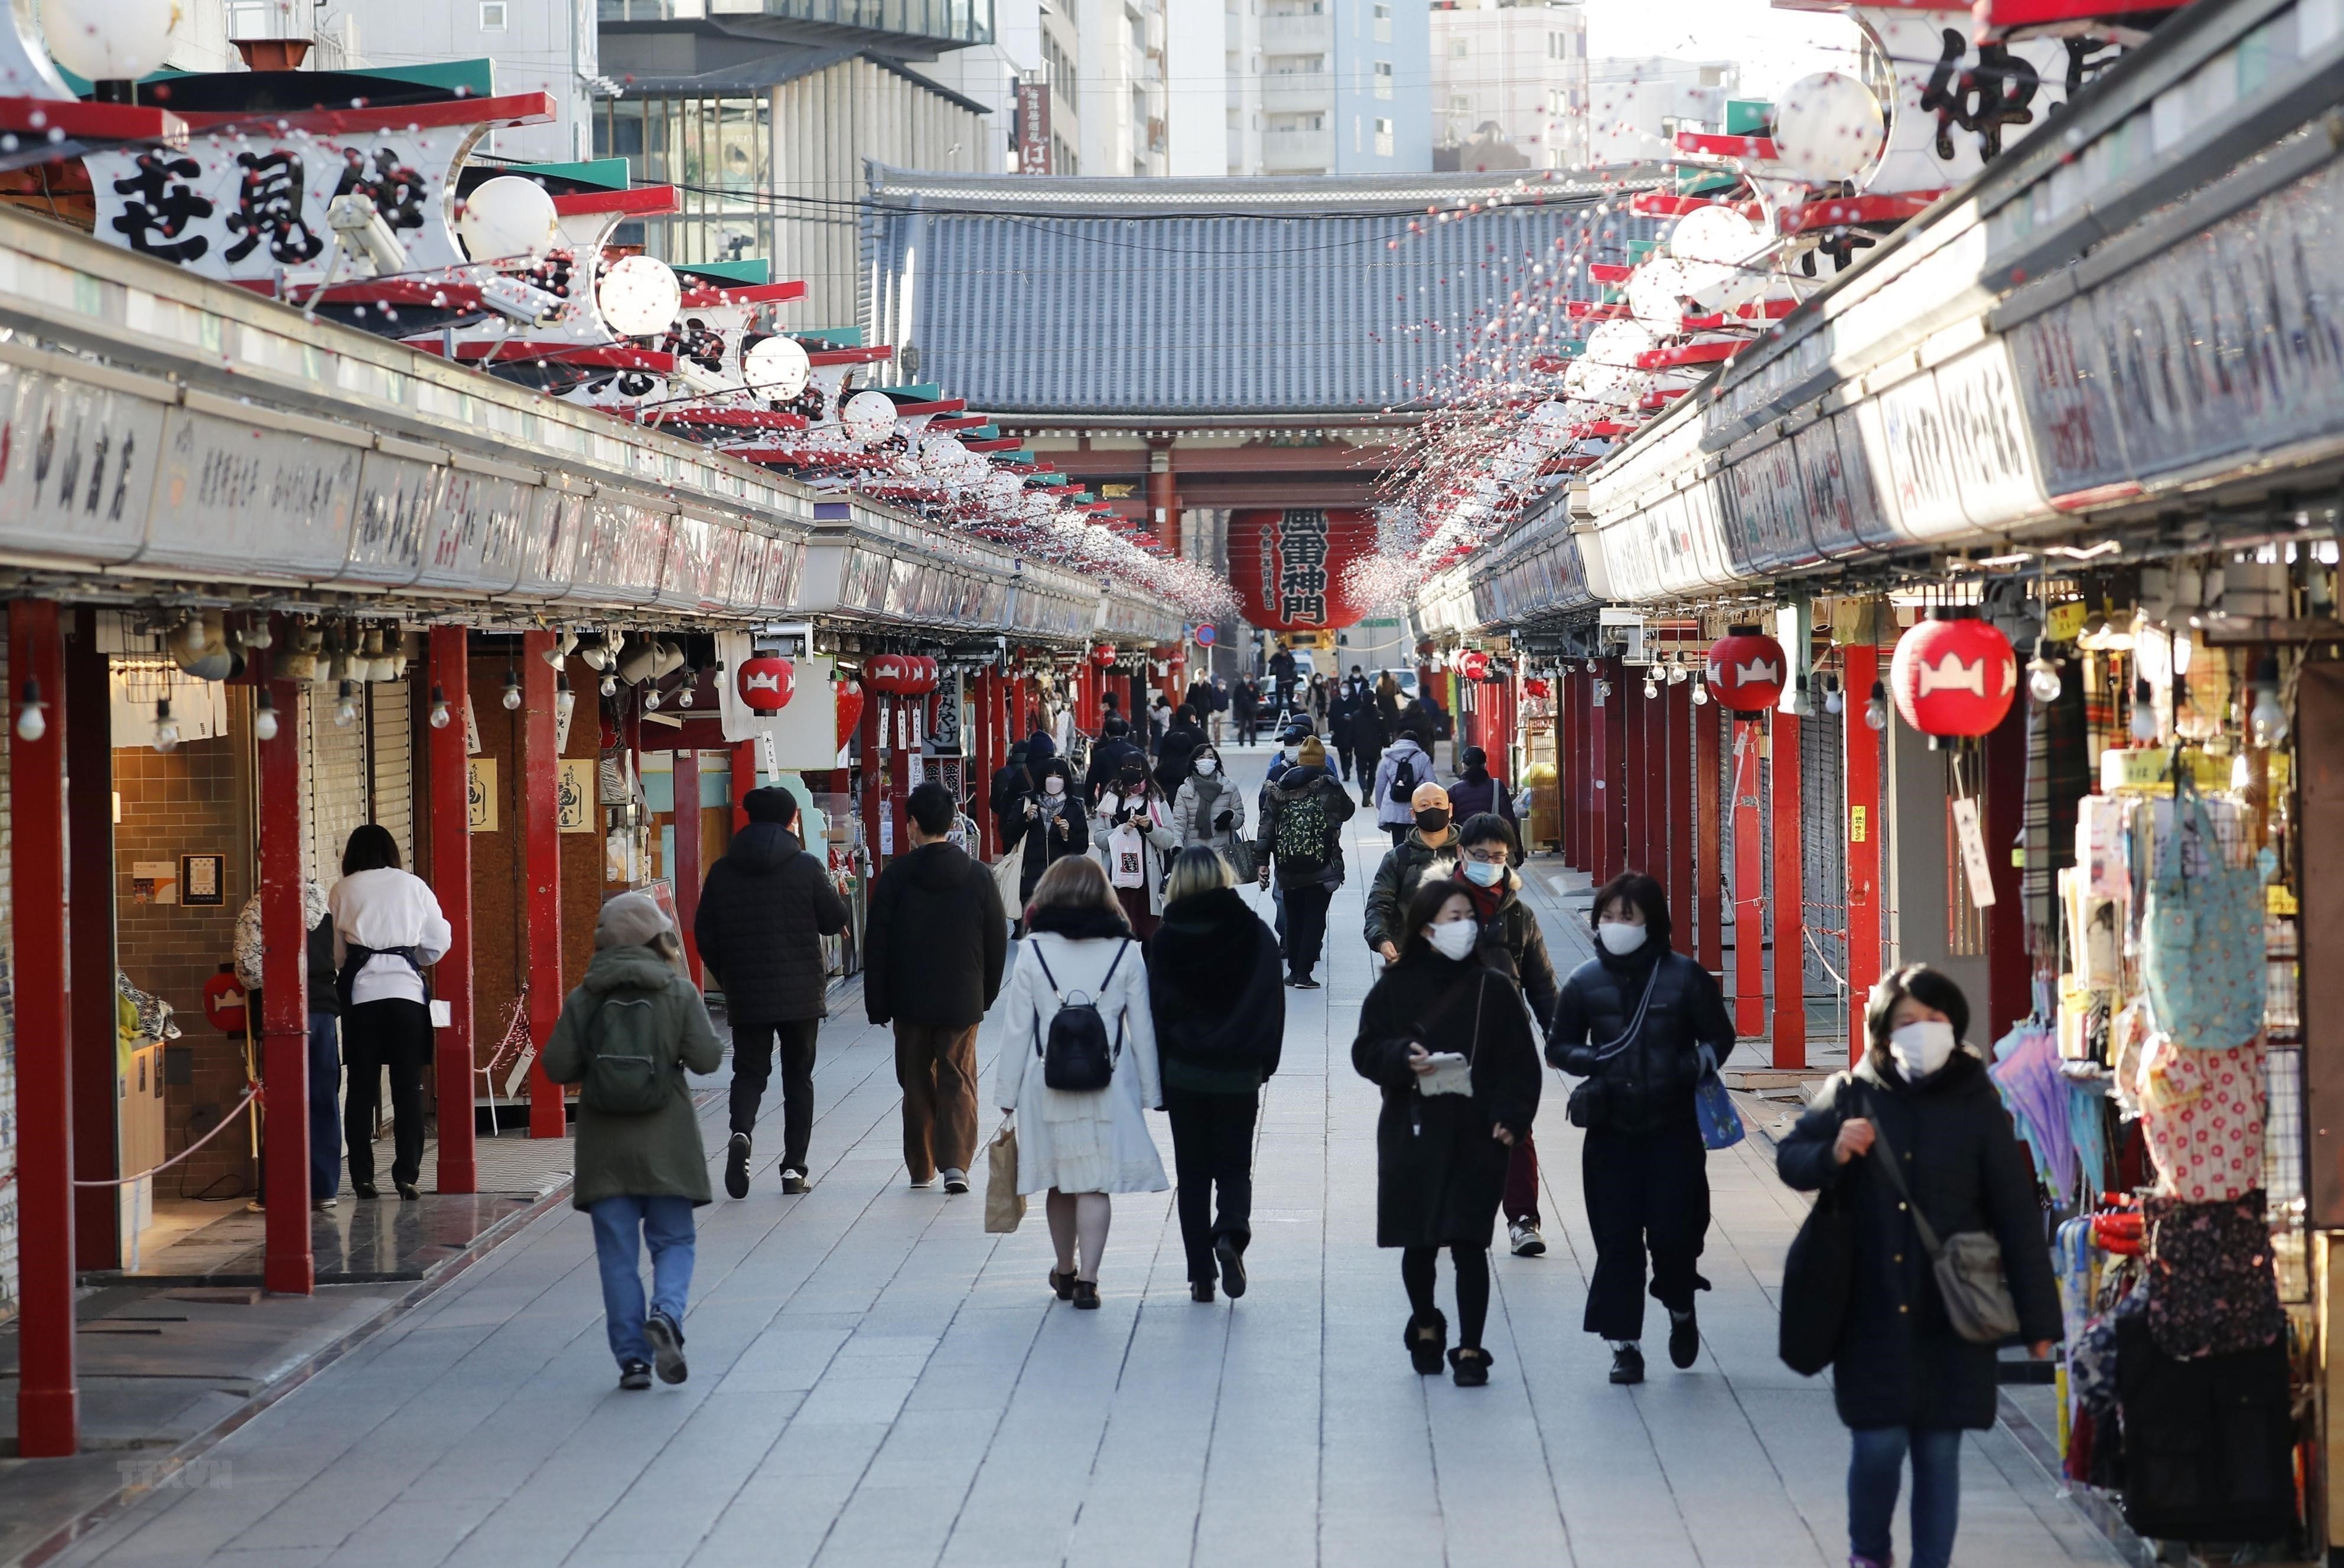  12 điều tuyệt vời khiến Nhật Bản trở thành quốc gia đáng sống nhất thế giới